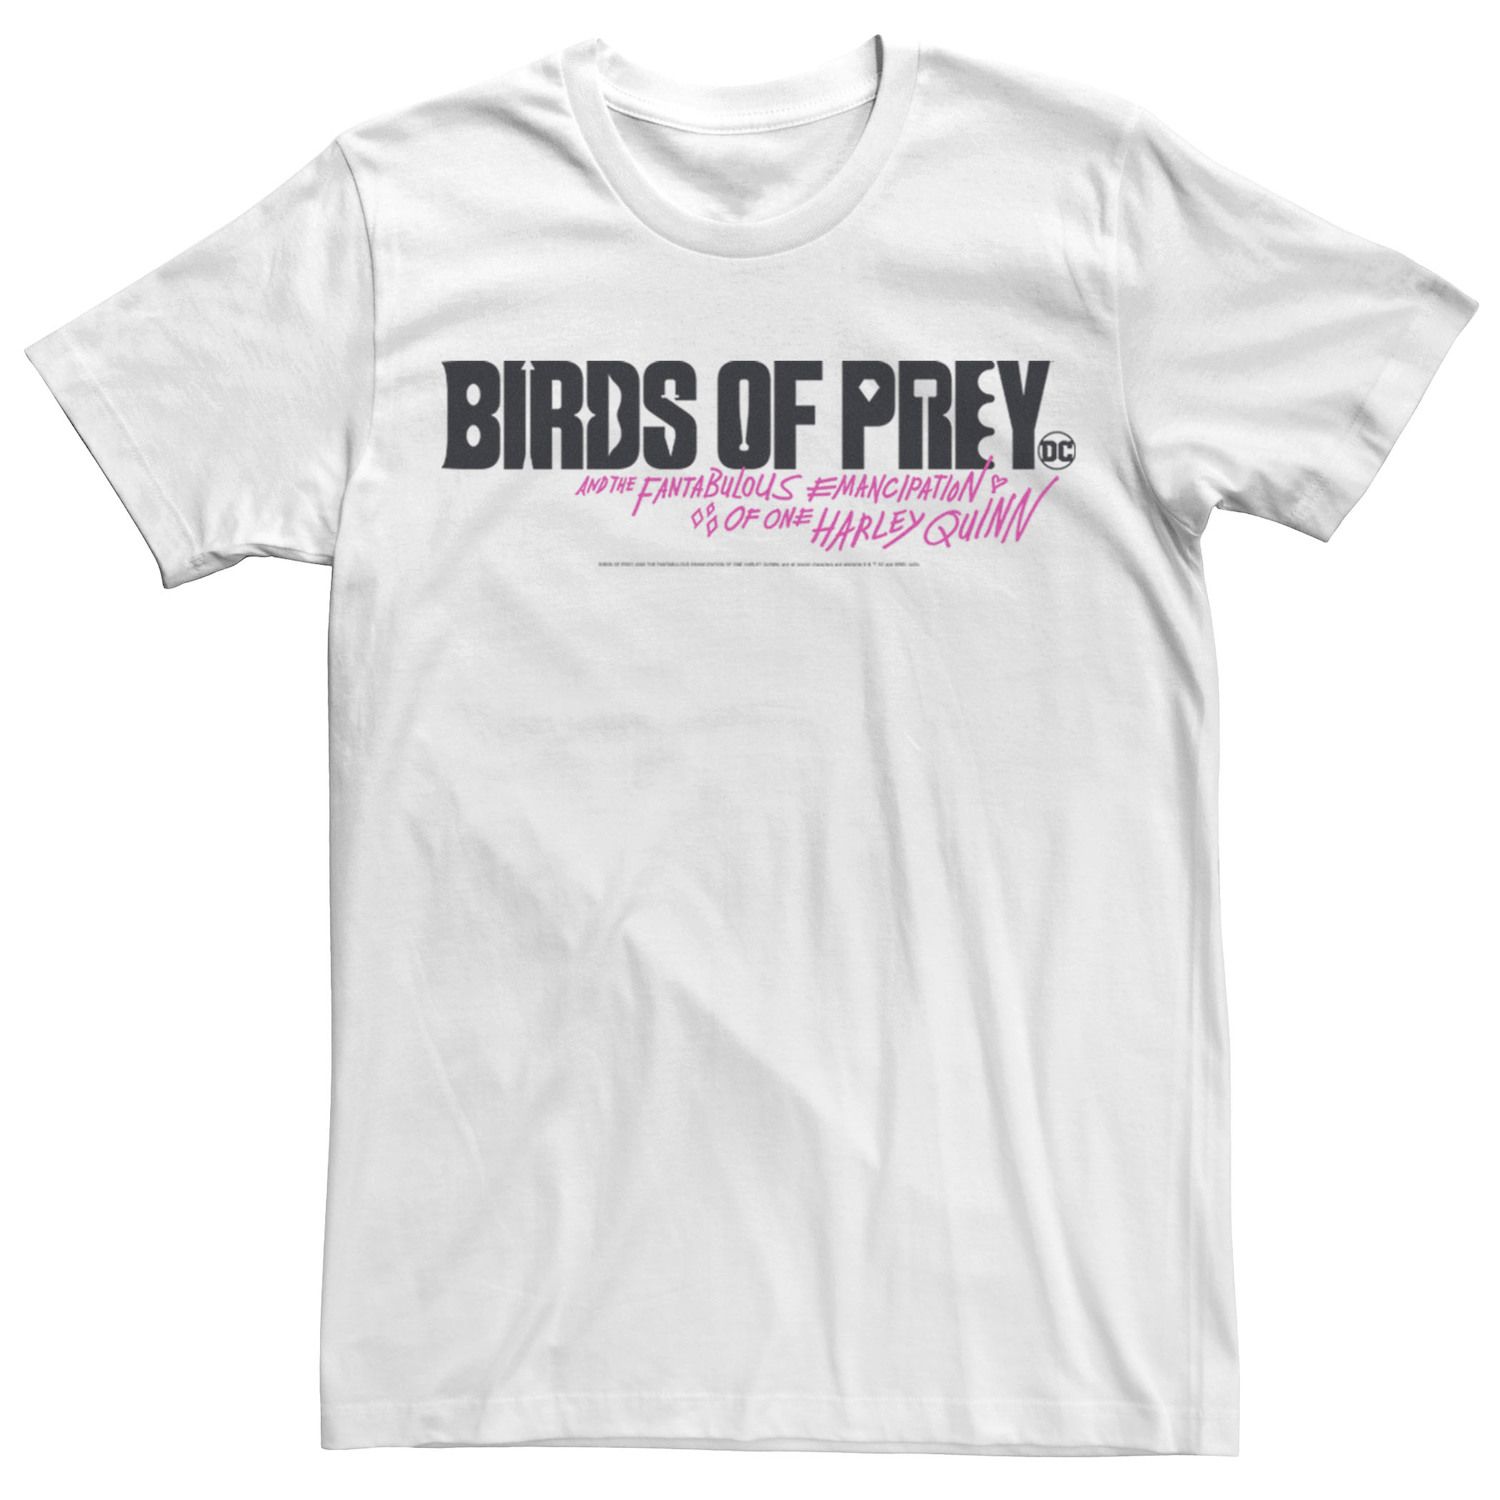 цена Мужская футболка с надписью «Хищные птицы и фантастическое освобождение Харли Квинн» DC Comics